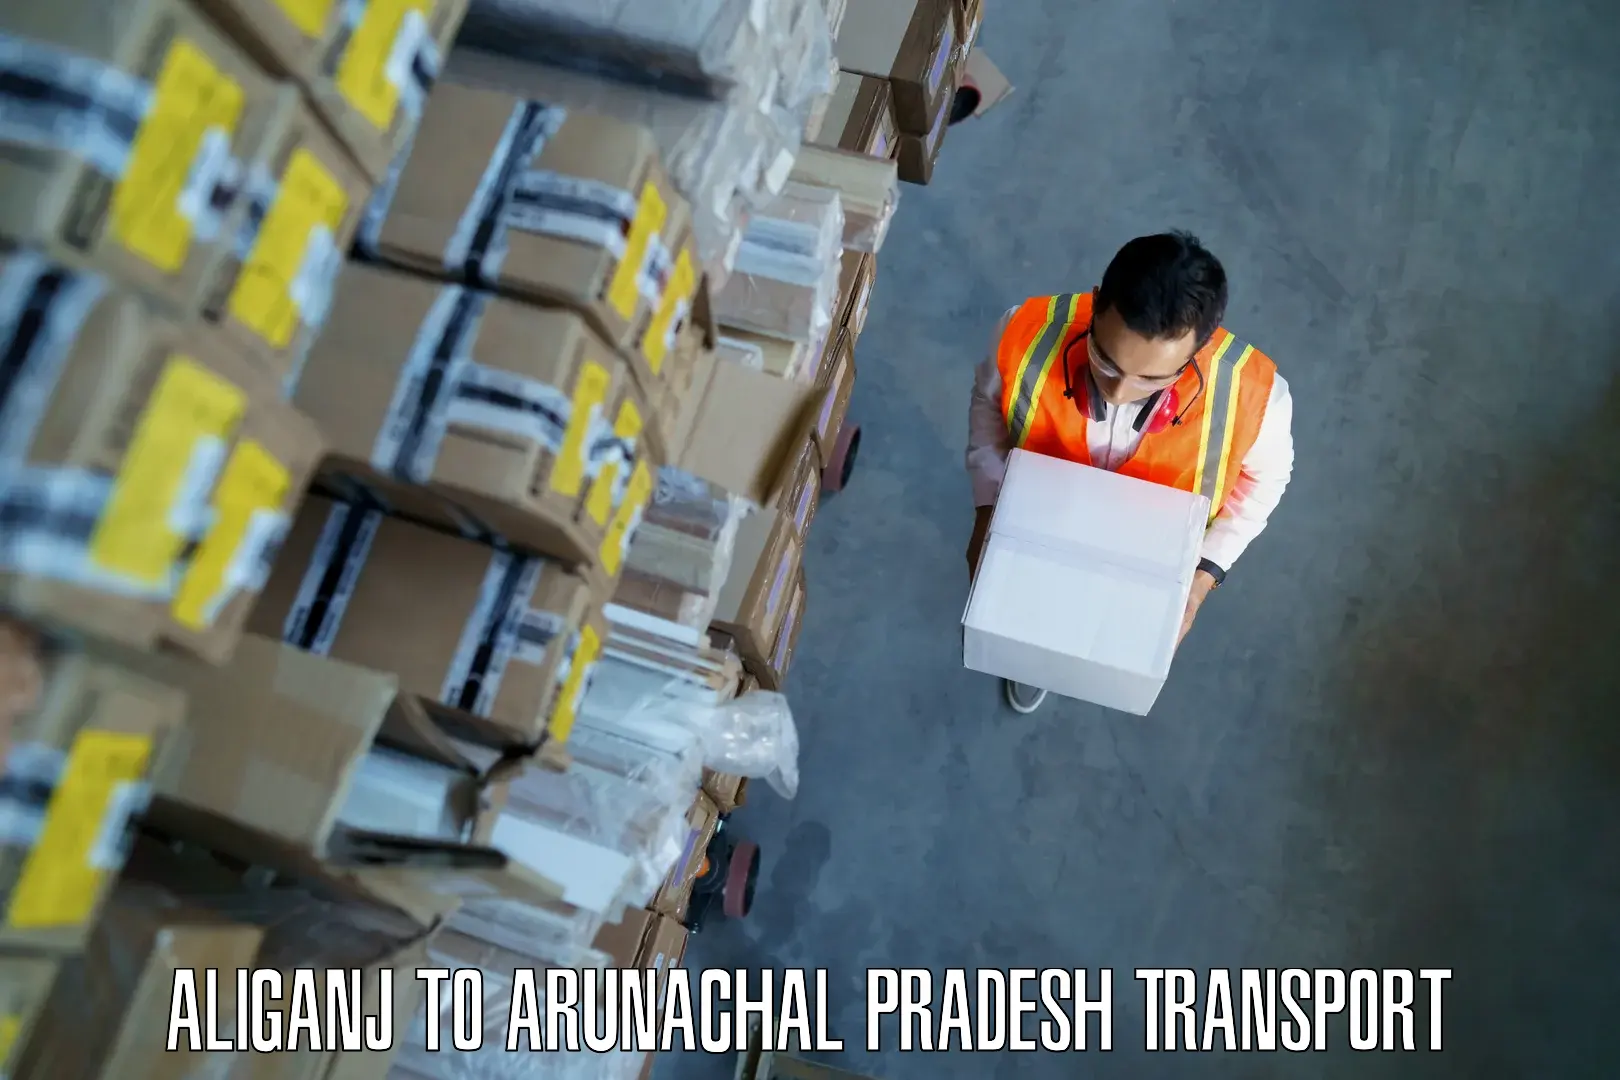 Interstate transport services Aliganj to Arunachal Pradesh